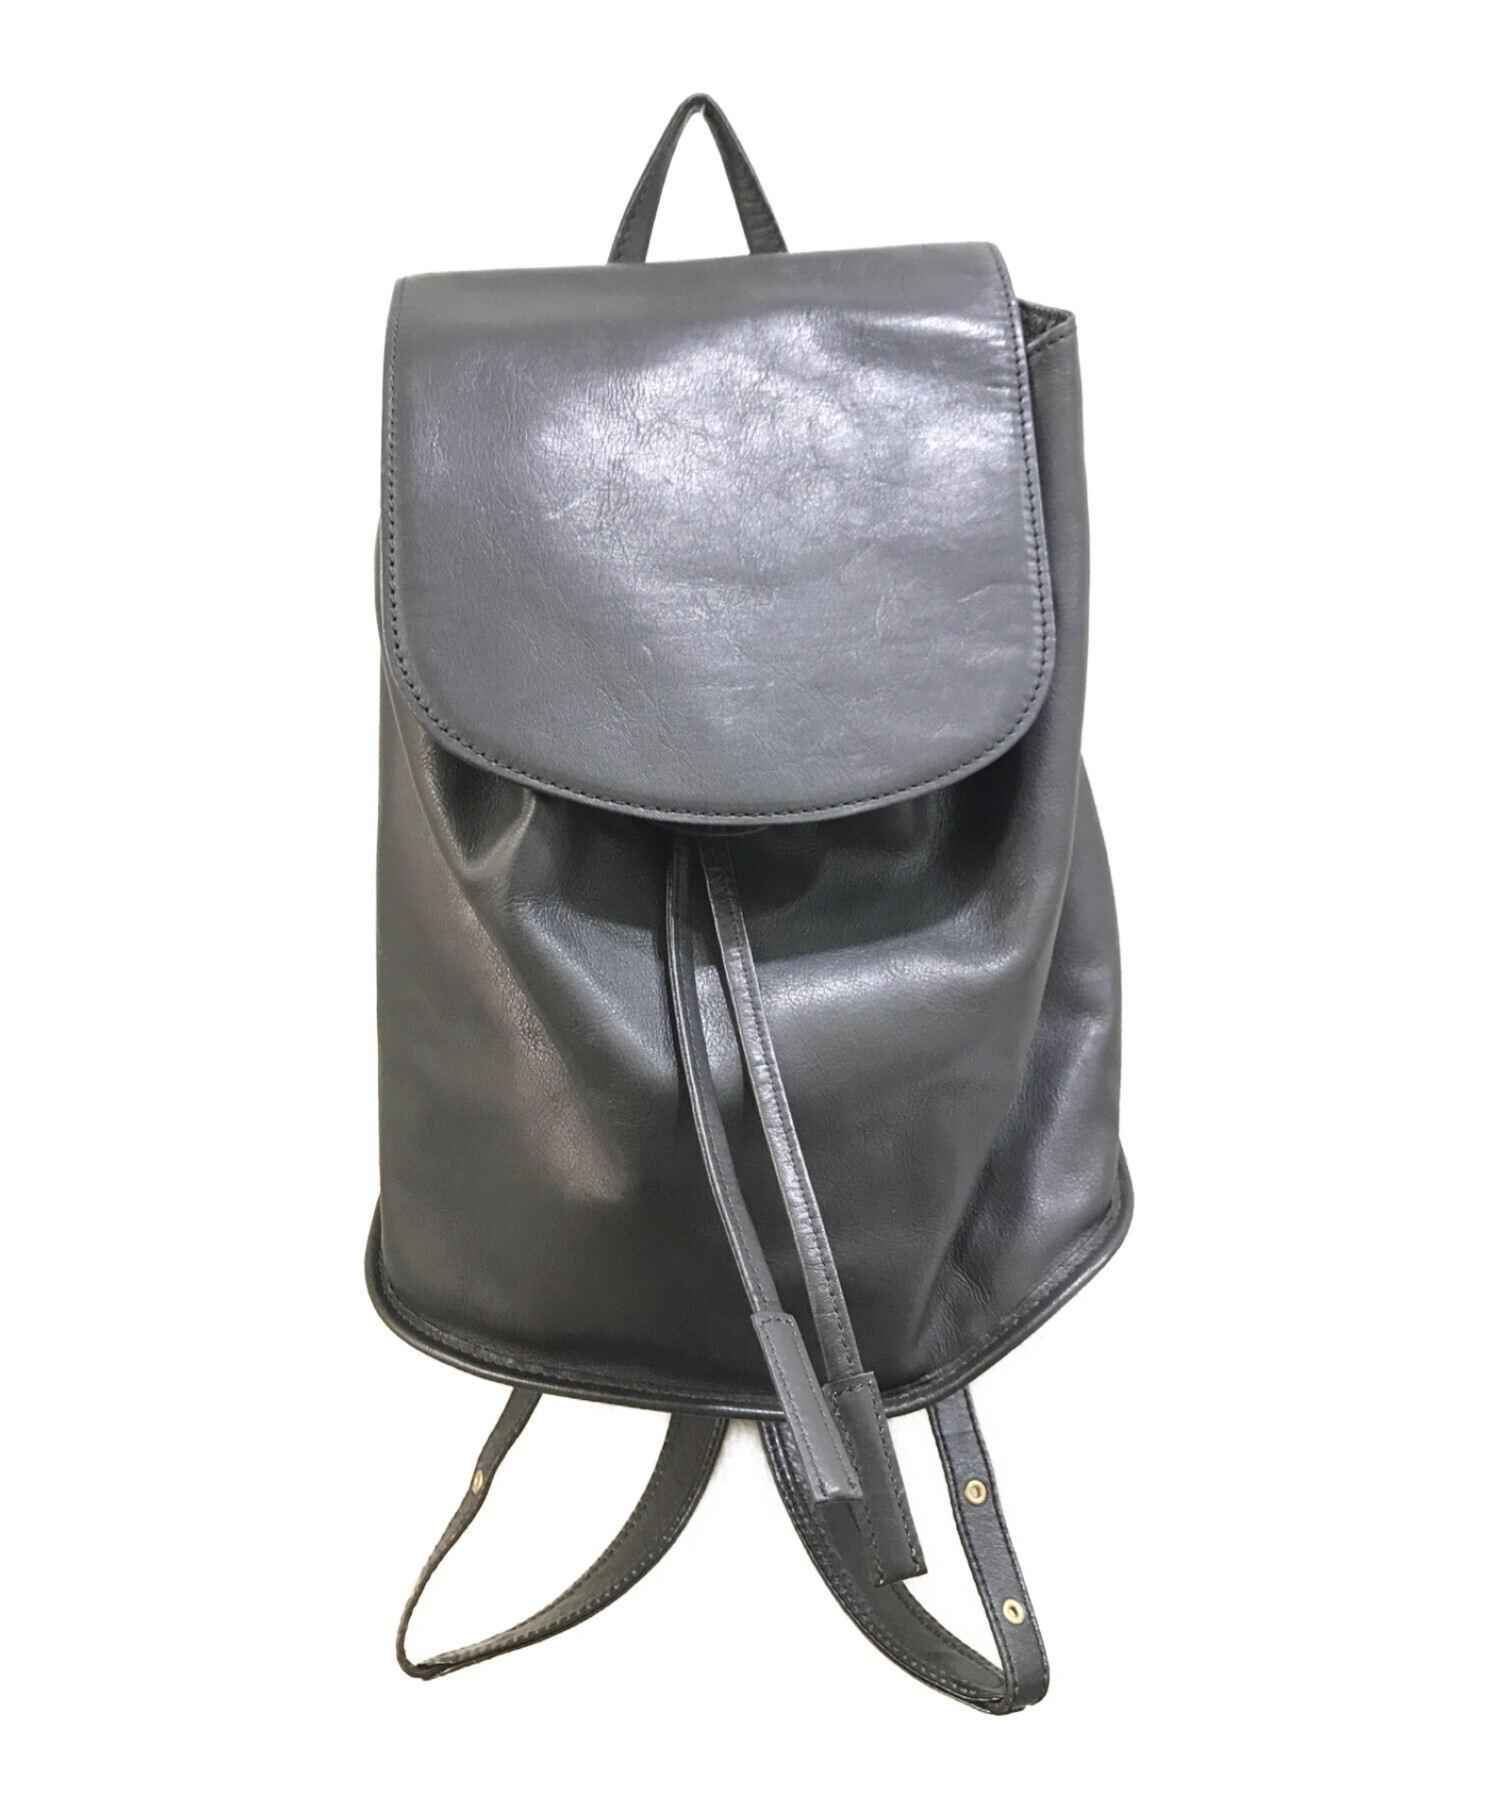 土屋鞄 (ツチヤカバン) プリソワ ミニリュック ブラック